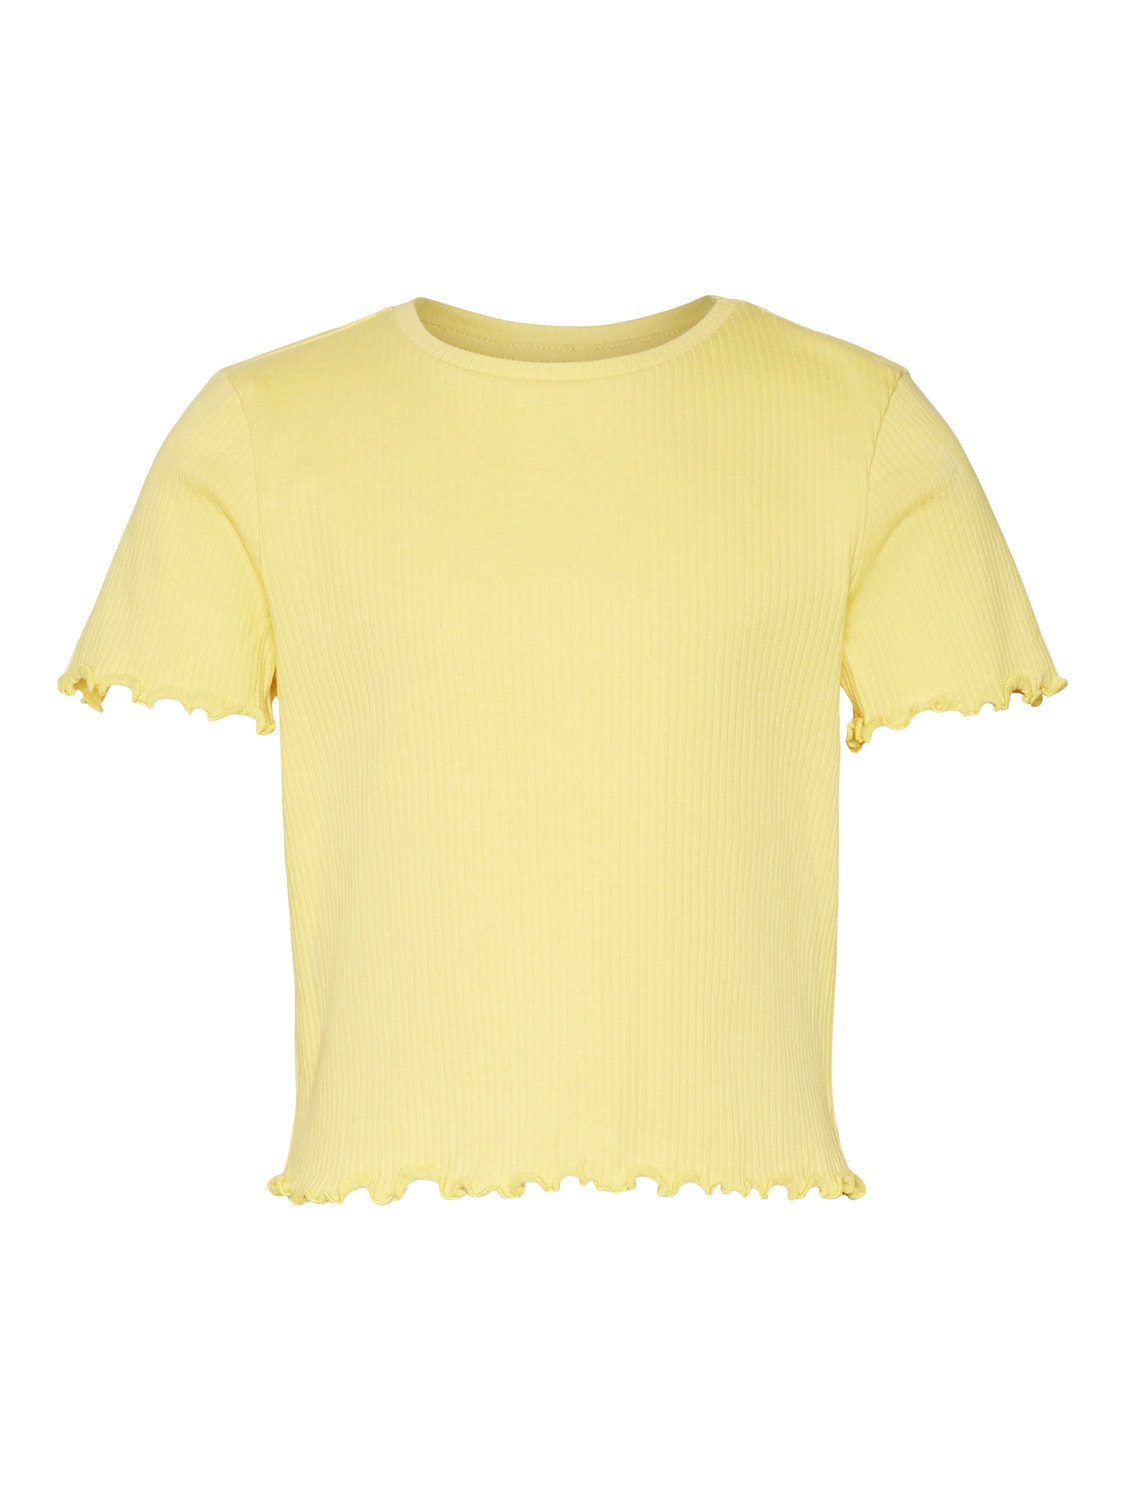 Vero Moda VMLAVENDER T-Shirt -Lemon Zest - 10285290